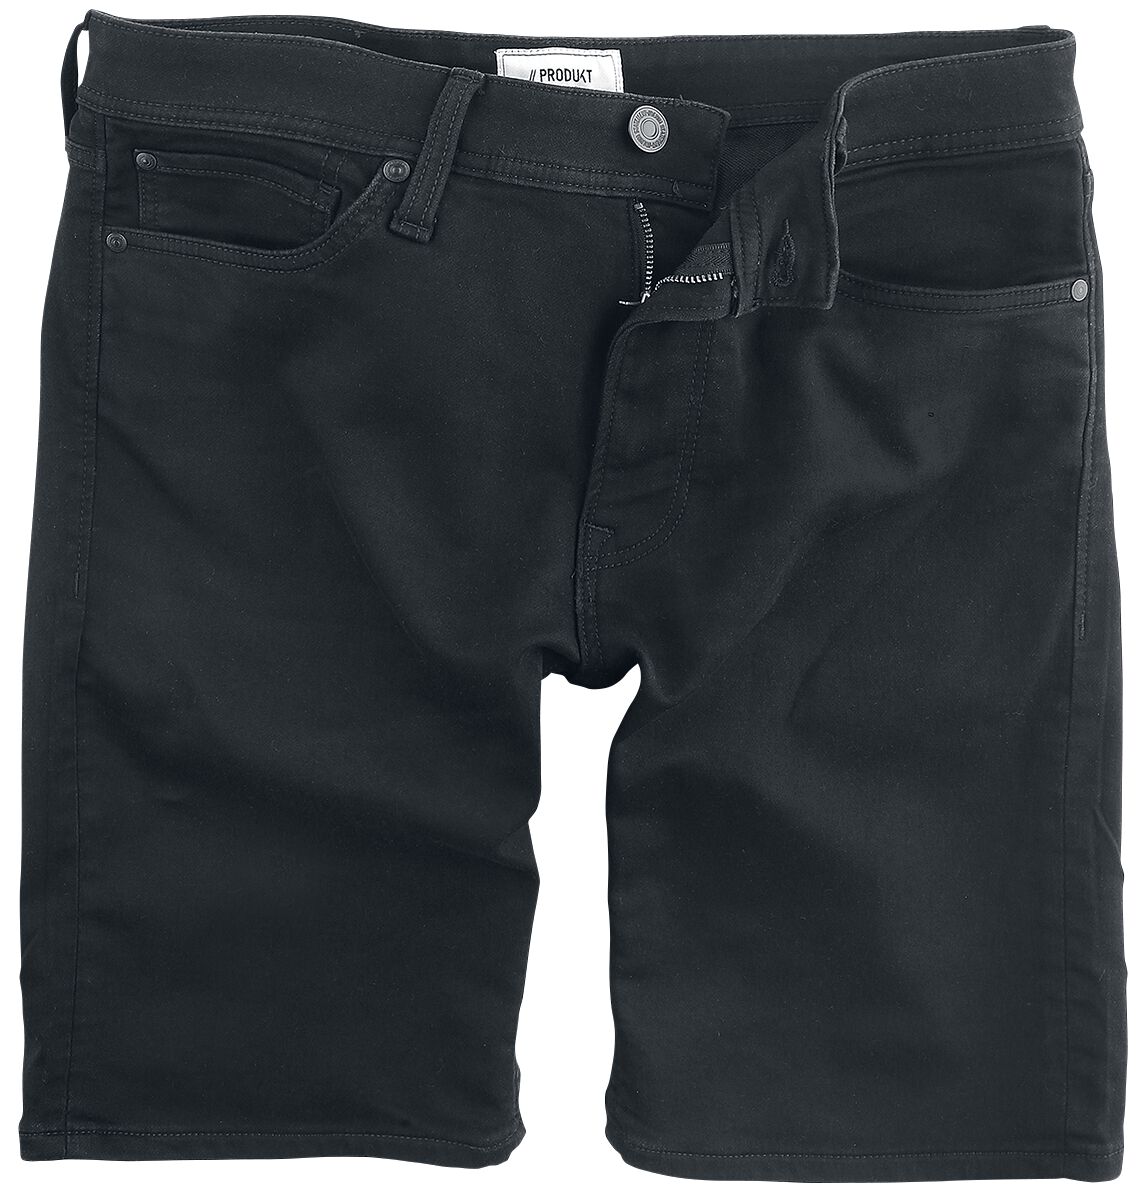 Produkt PKTAKM Knit Shorts Shorts black